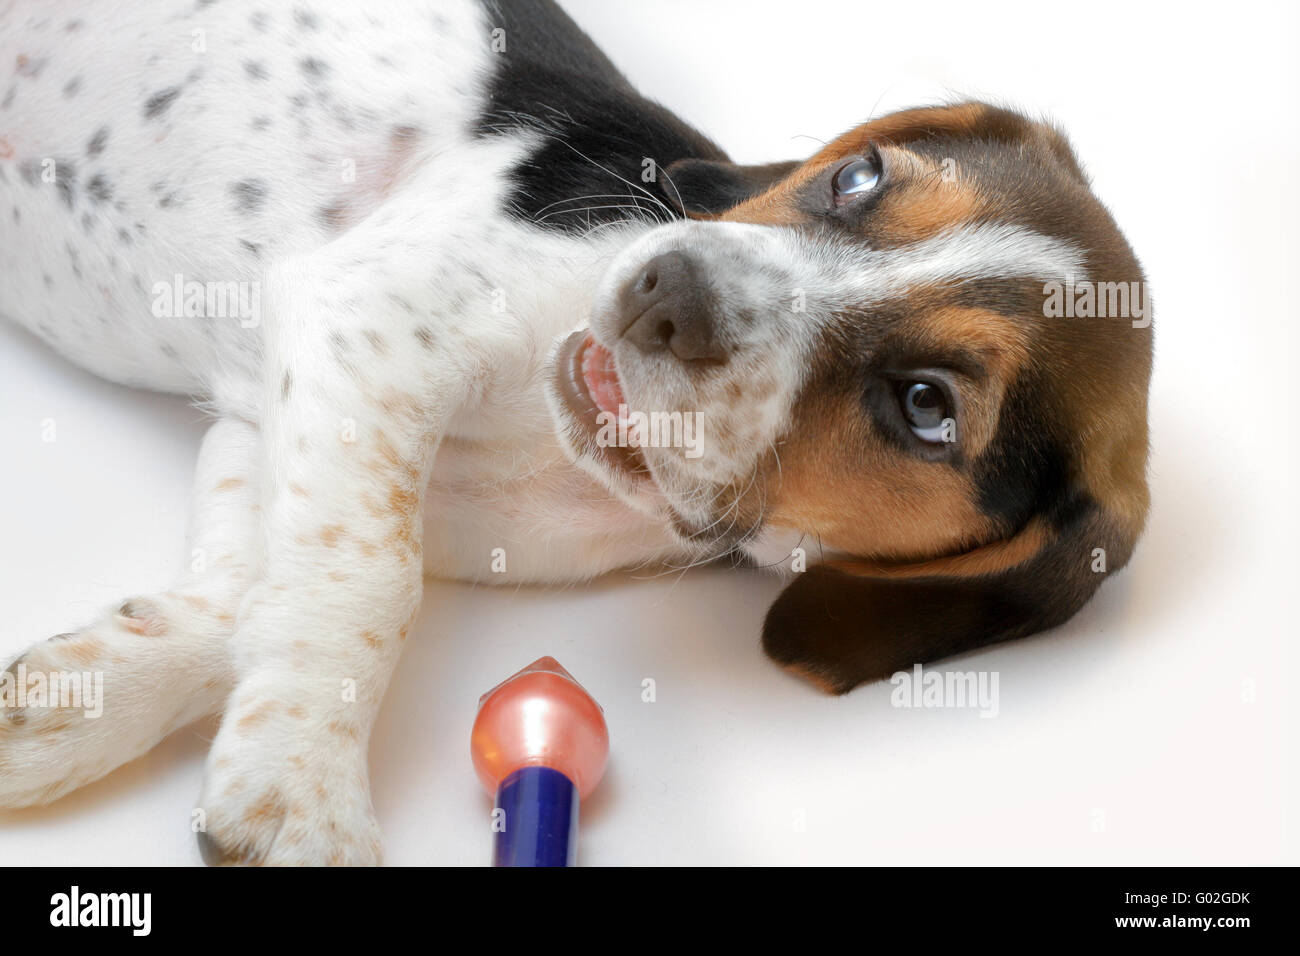 Mignon chiot beagle tricolore joue avec un vernis à ongles rouge Banque D'Images